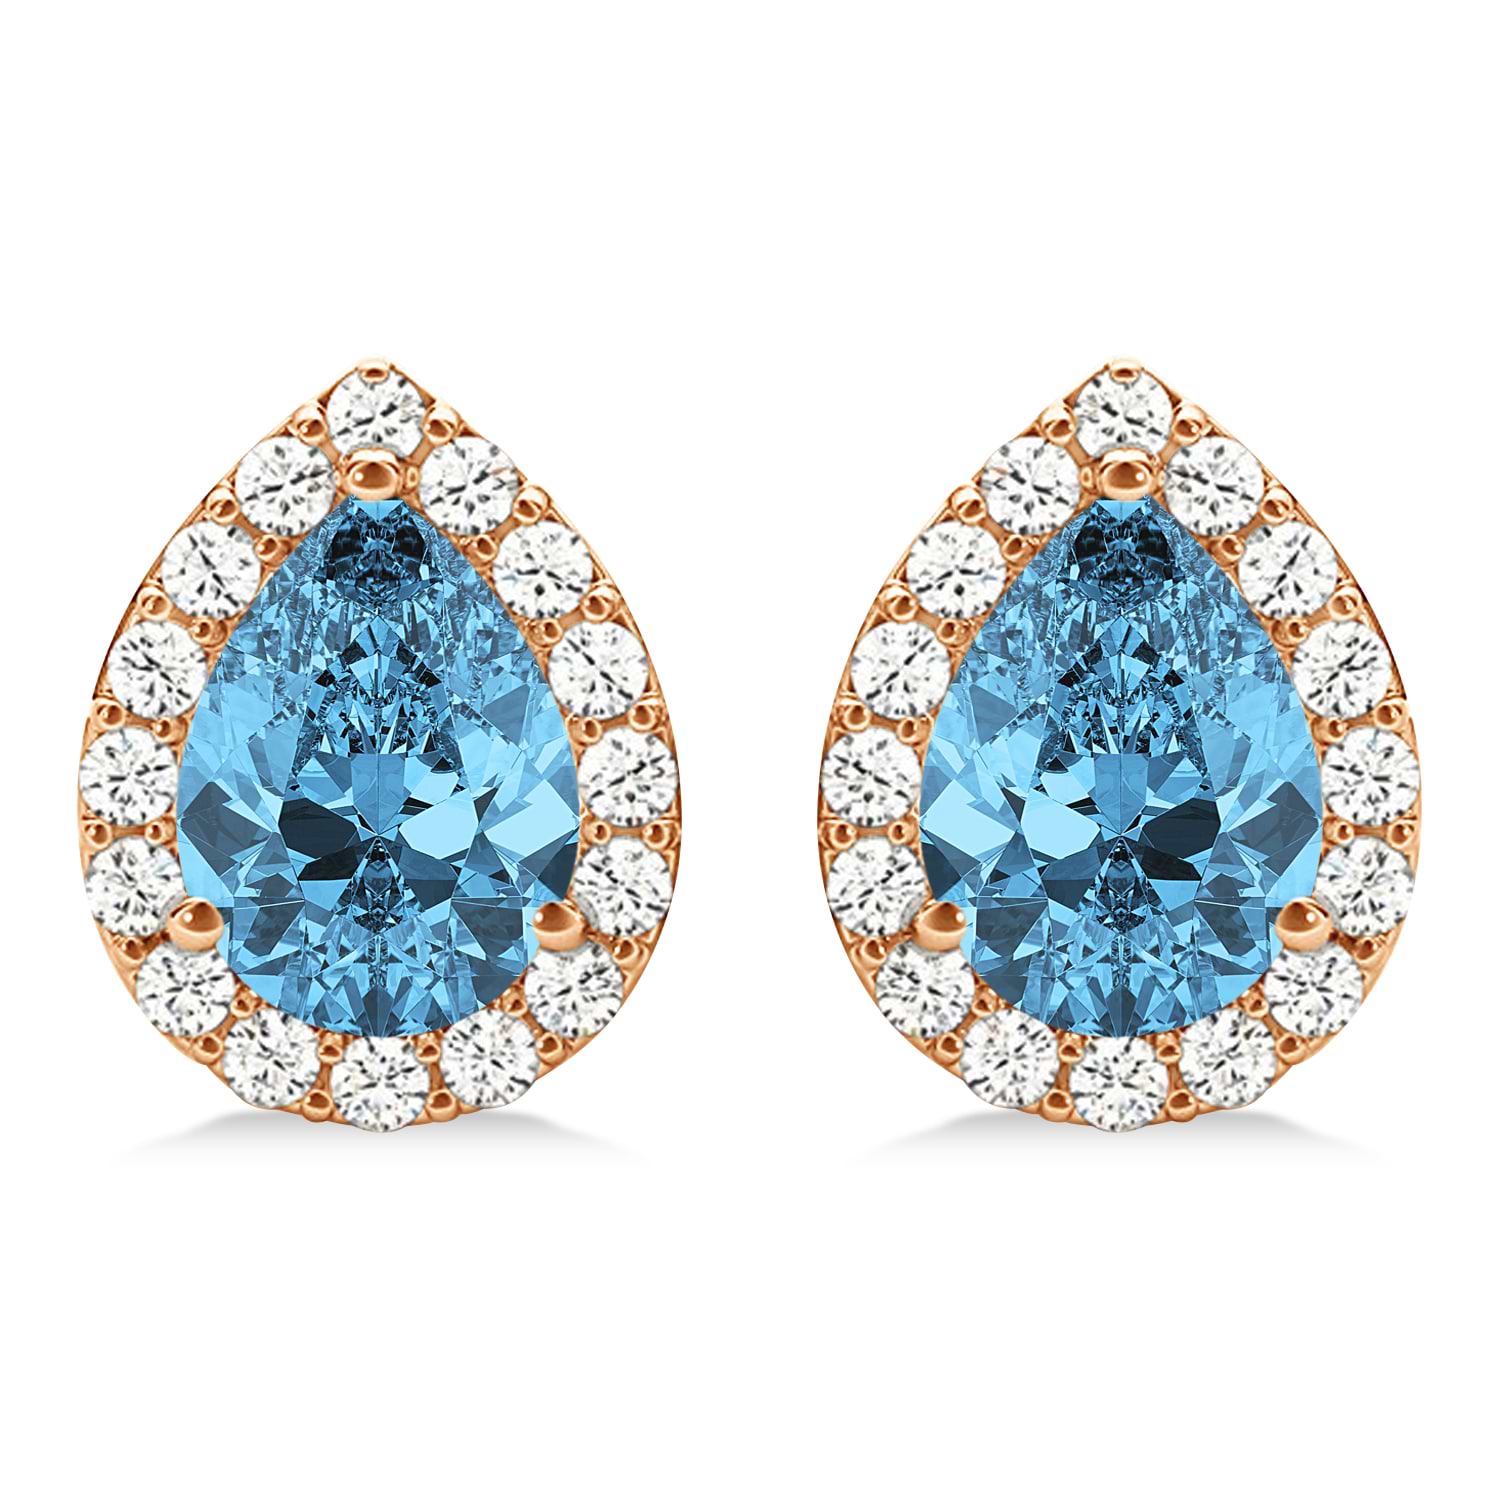 Teardrop Blue Topaz & Diamond Halo Earrings 14k Rose Gold (2.24ct)